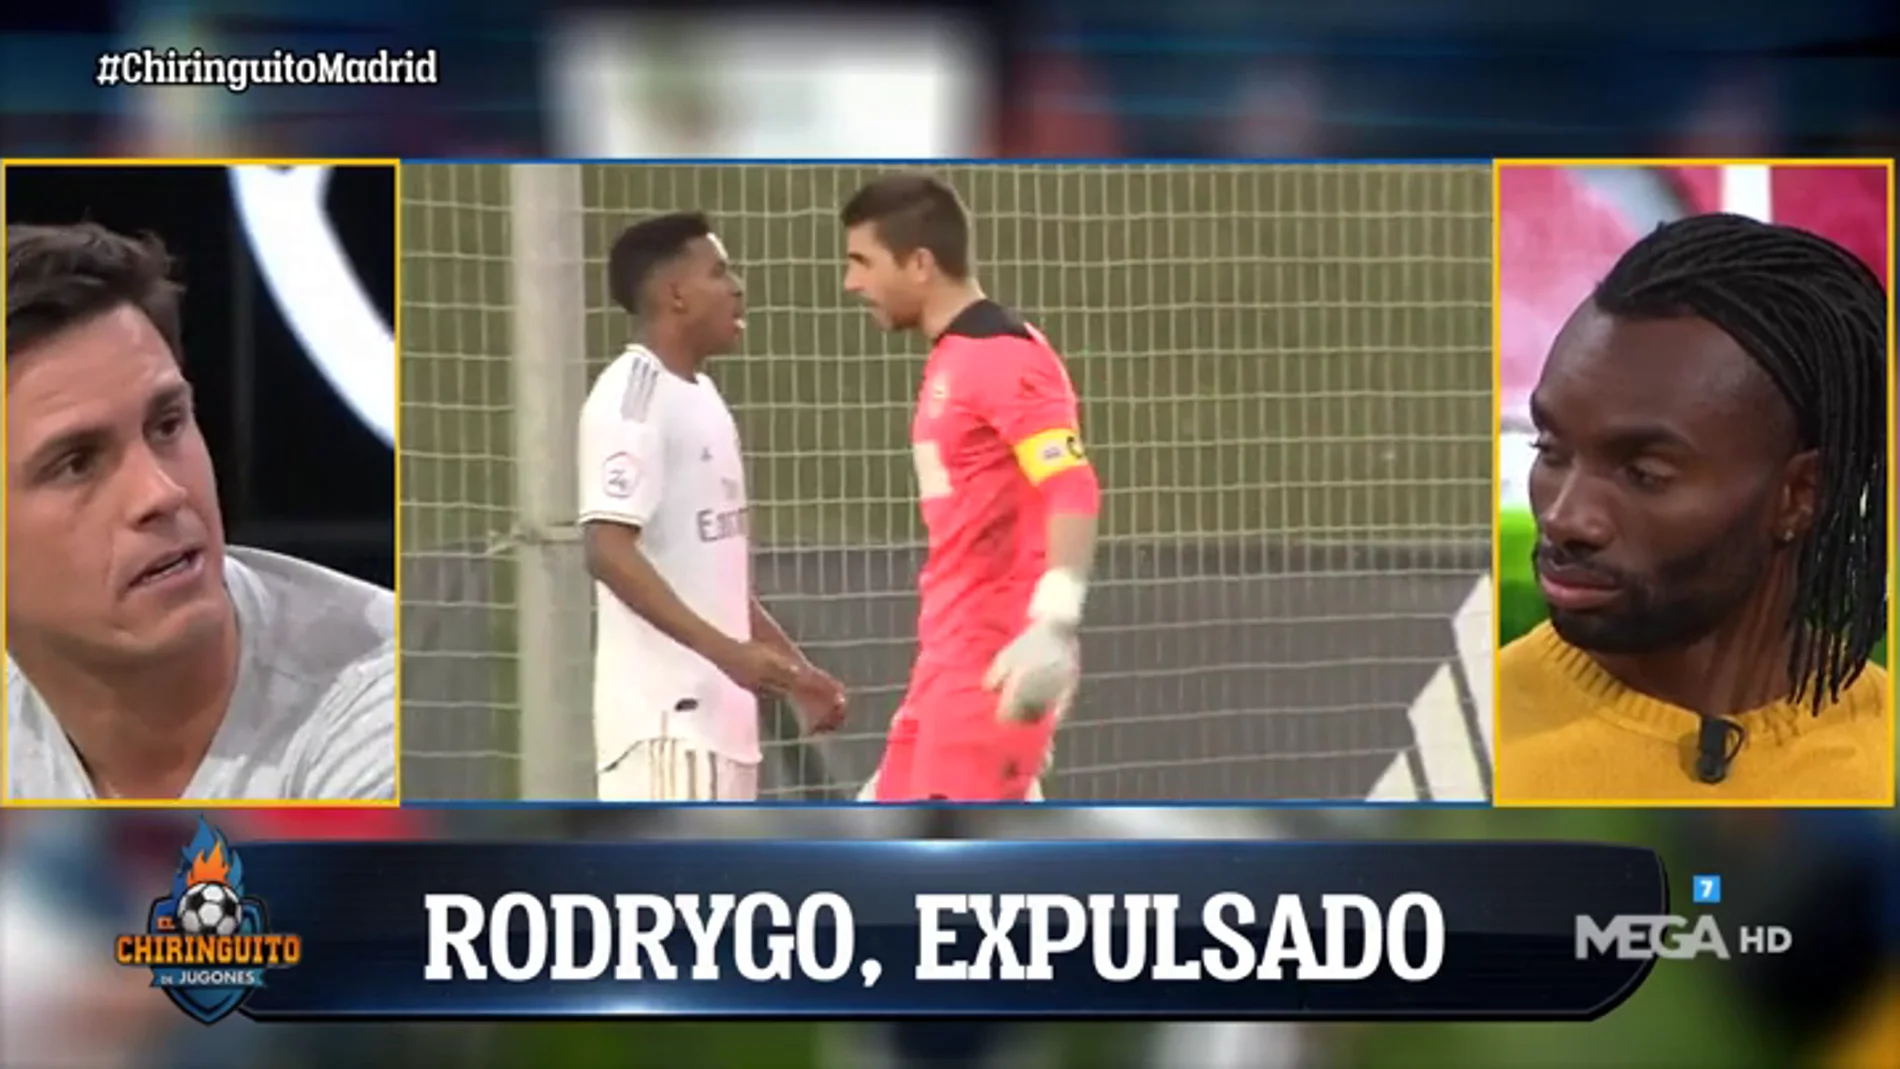 Rodrygo acaba expulsado con el Castilla tras celebrar su gol en la cara del portero